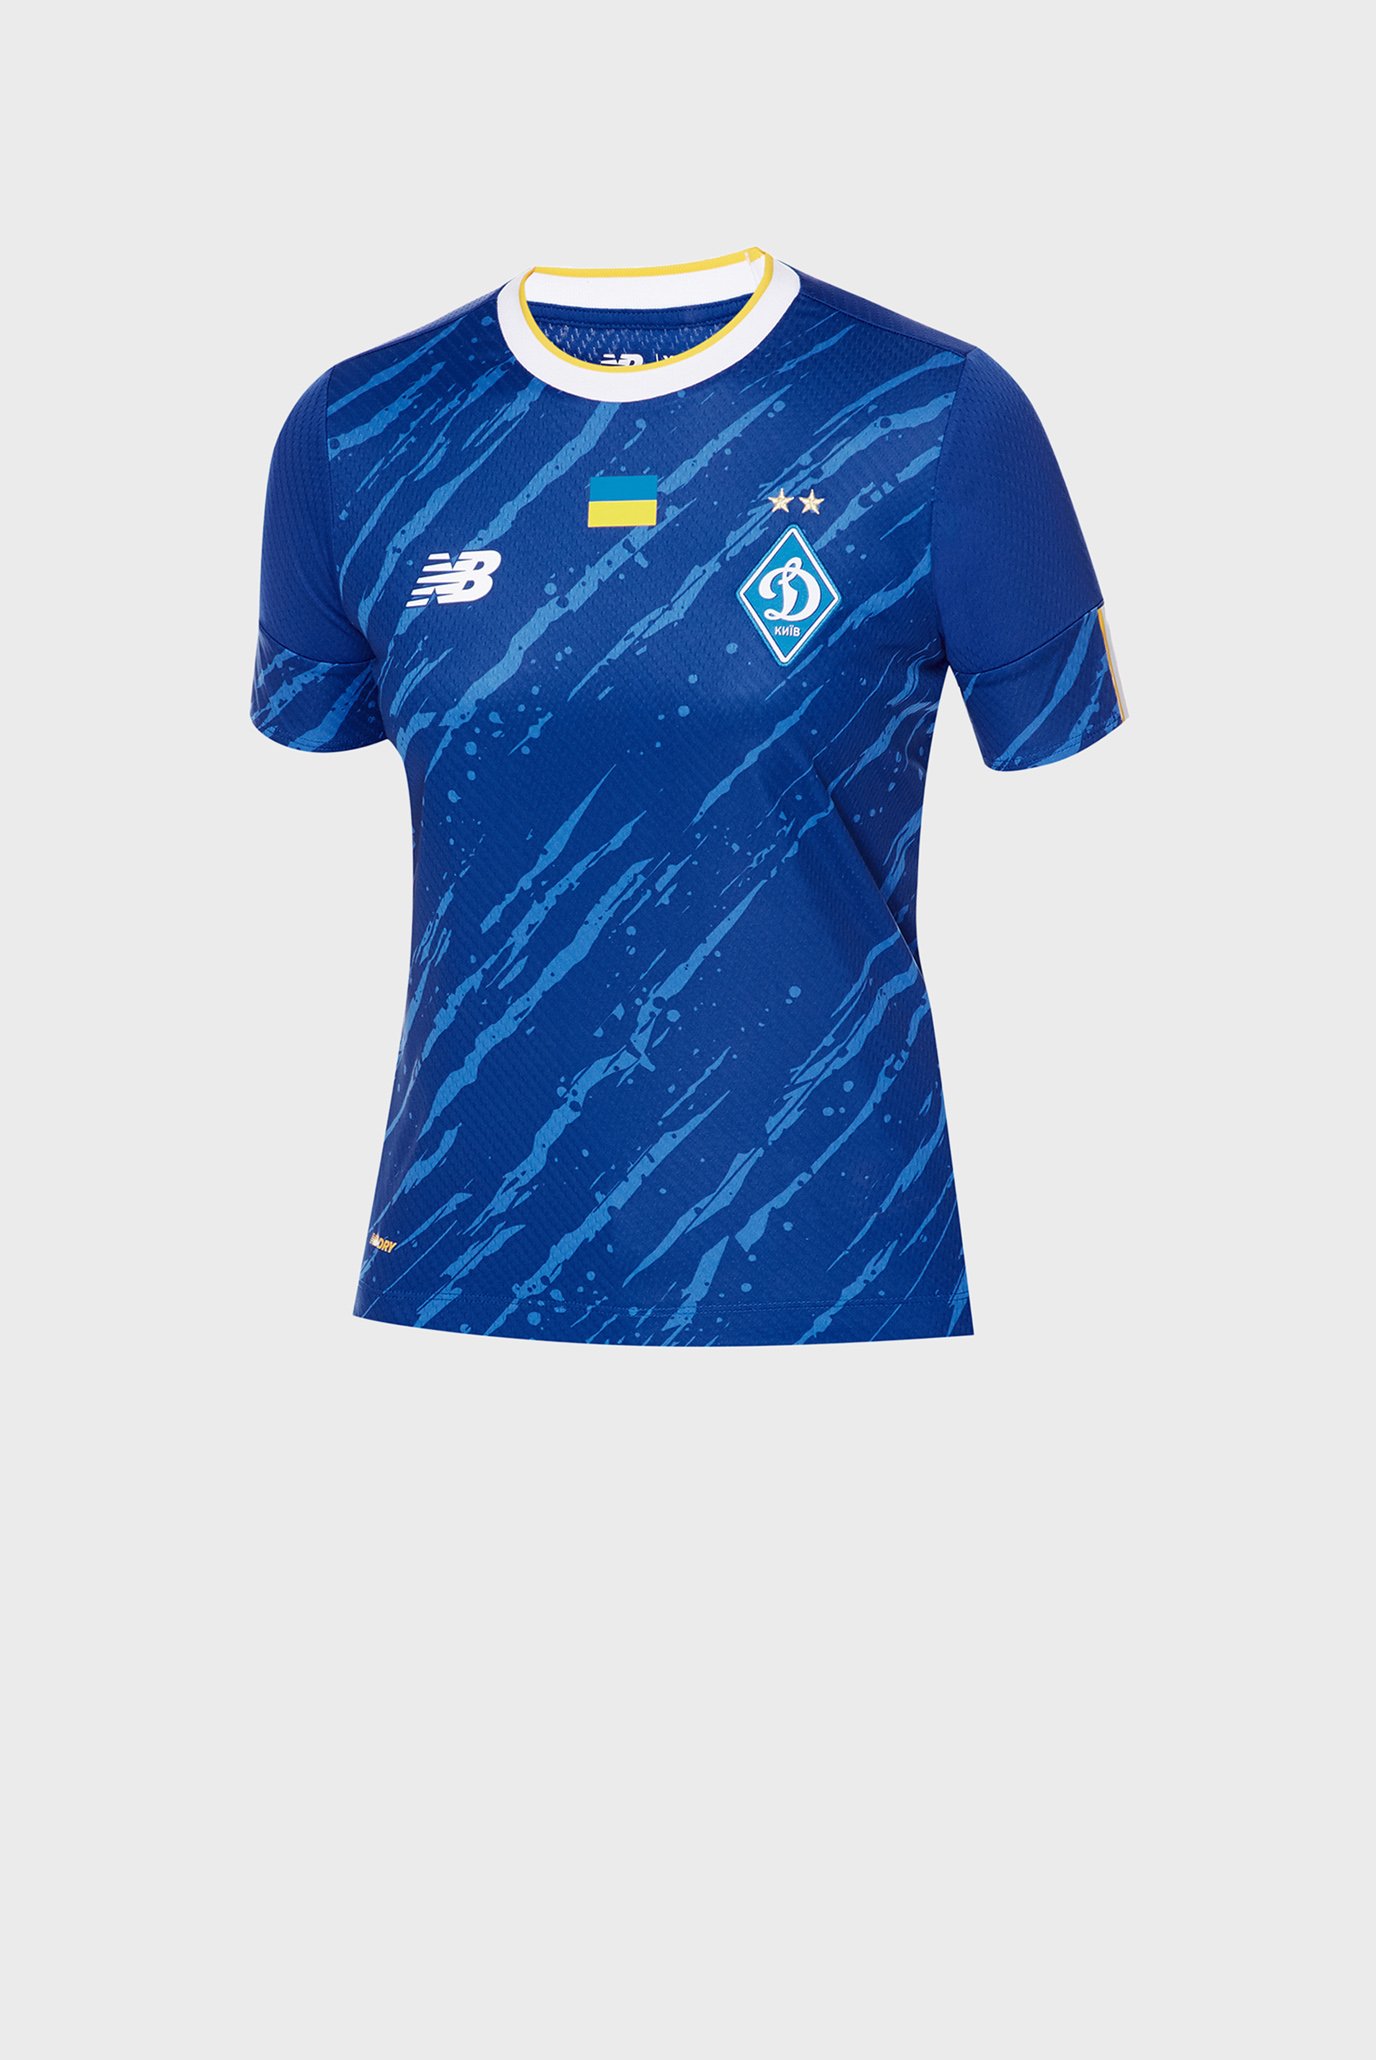 Детская синяя футболка ФК «Динамо» Киев Away 1